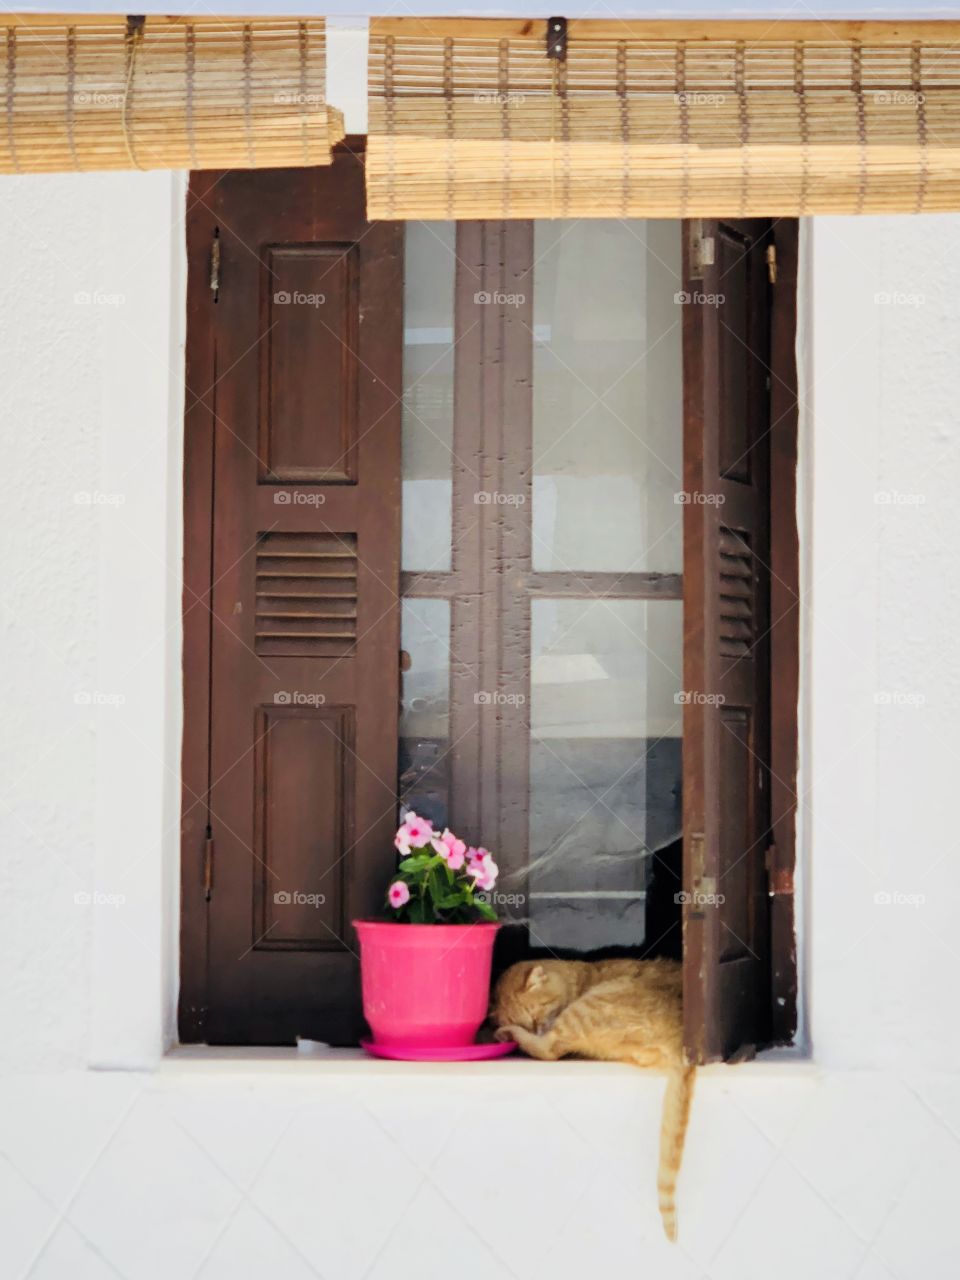 Daytime in Milos. Cat is sleeping near the window 